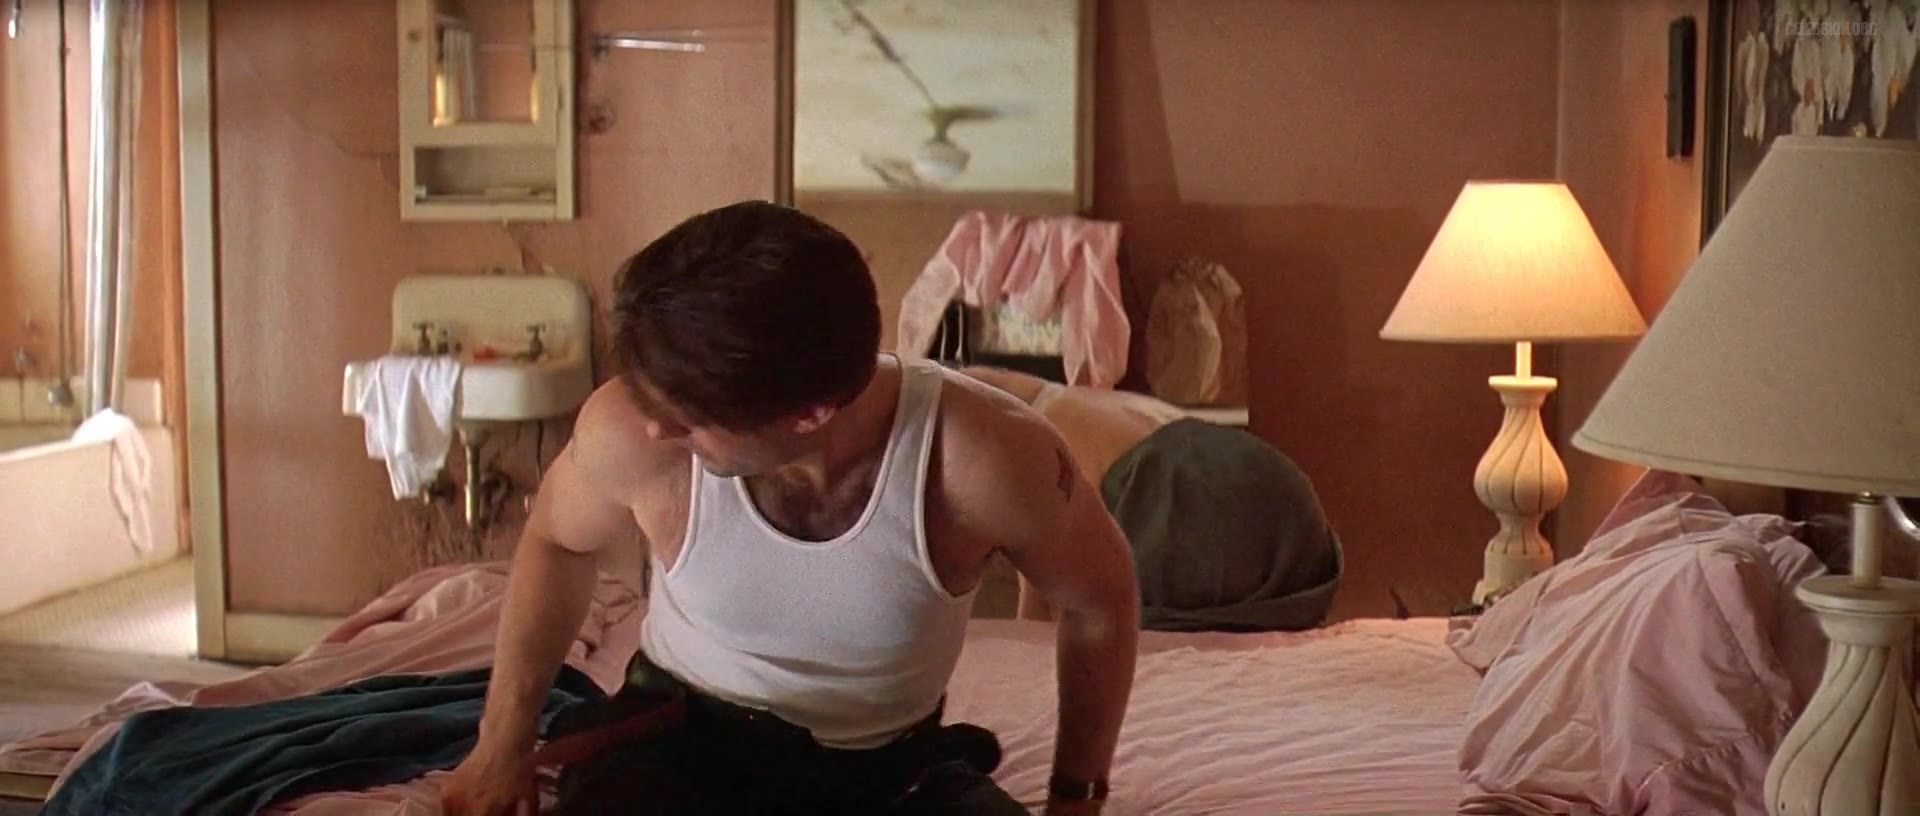 Kim Basinger screentime - The Getaway